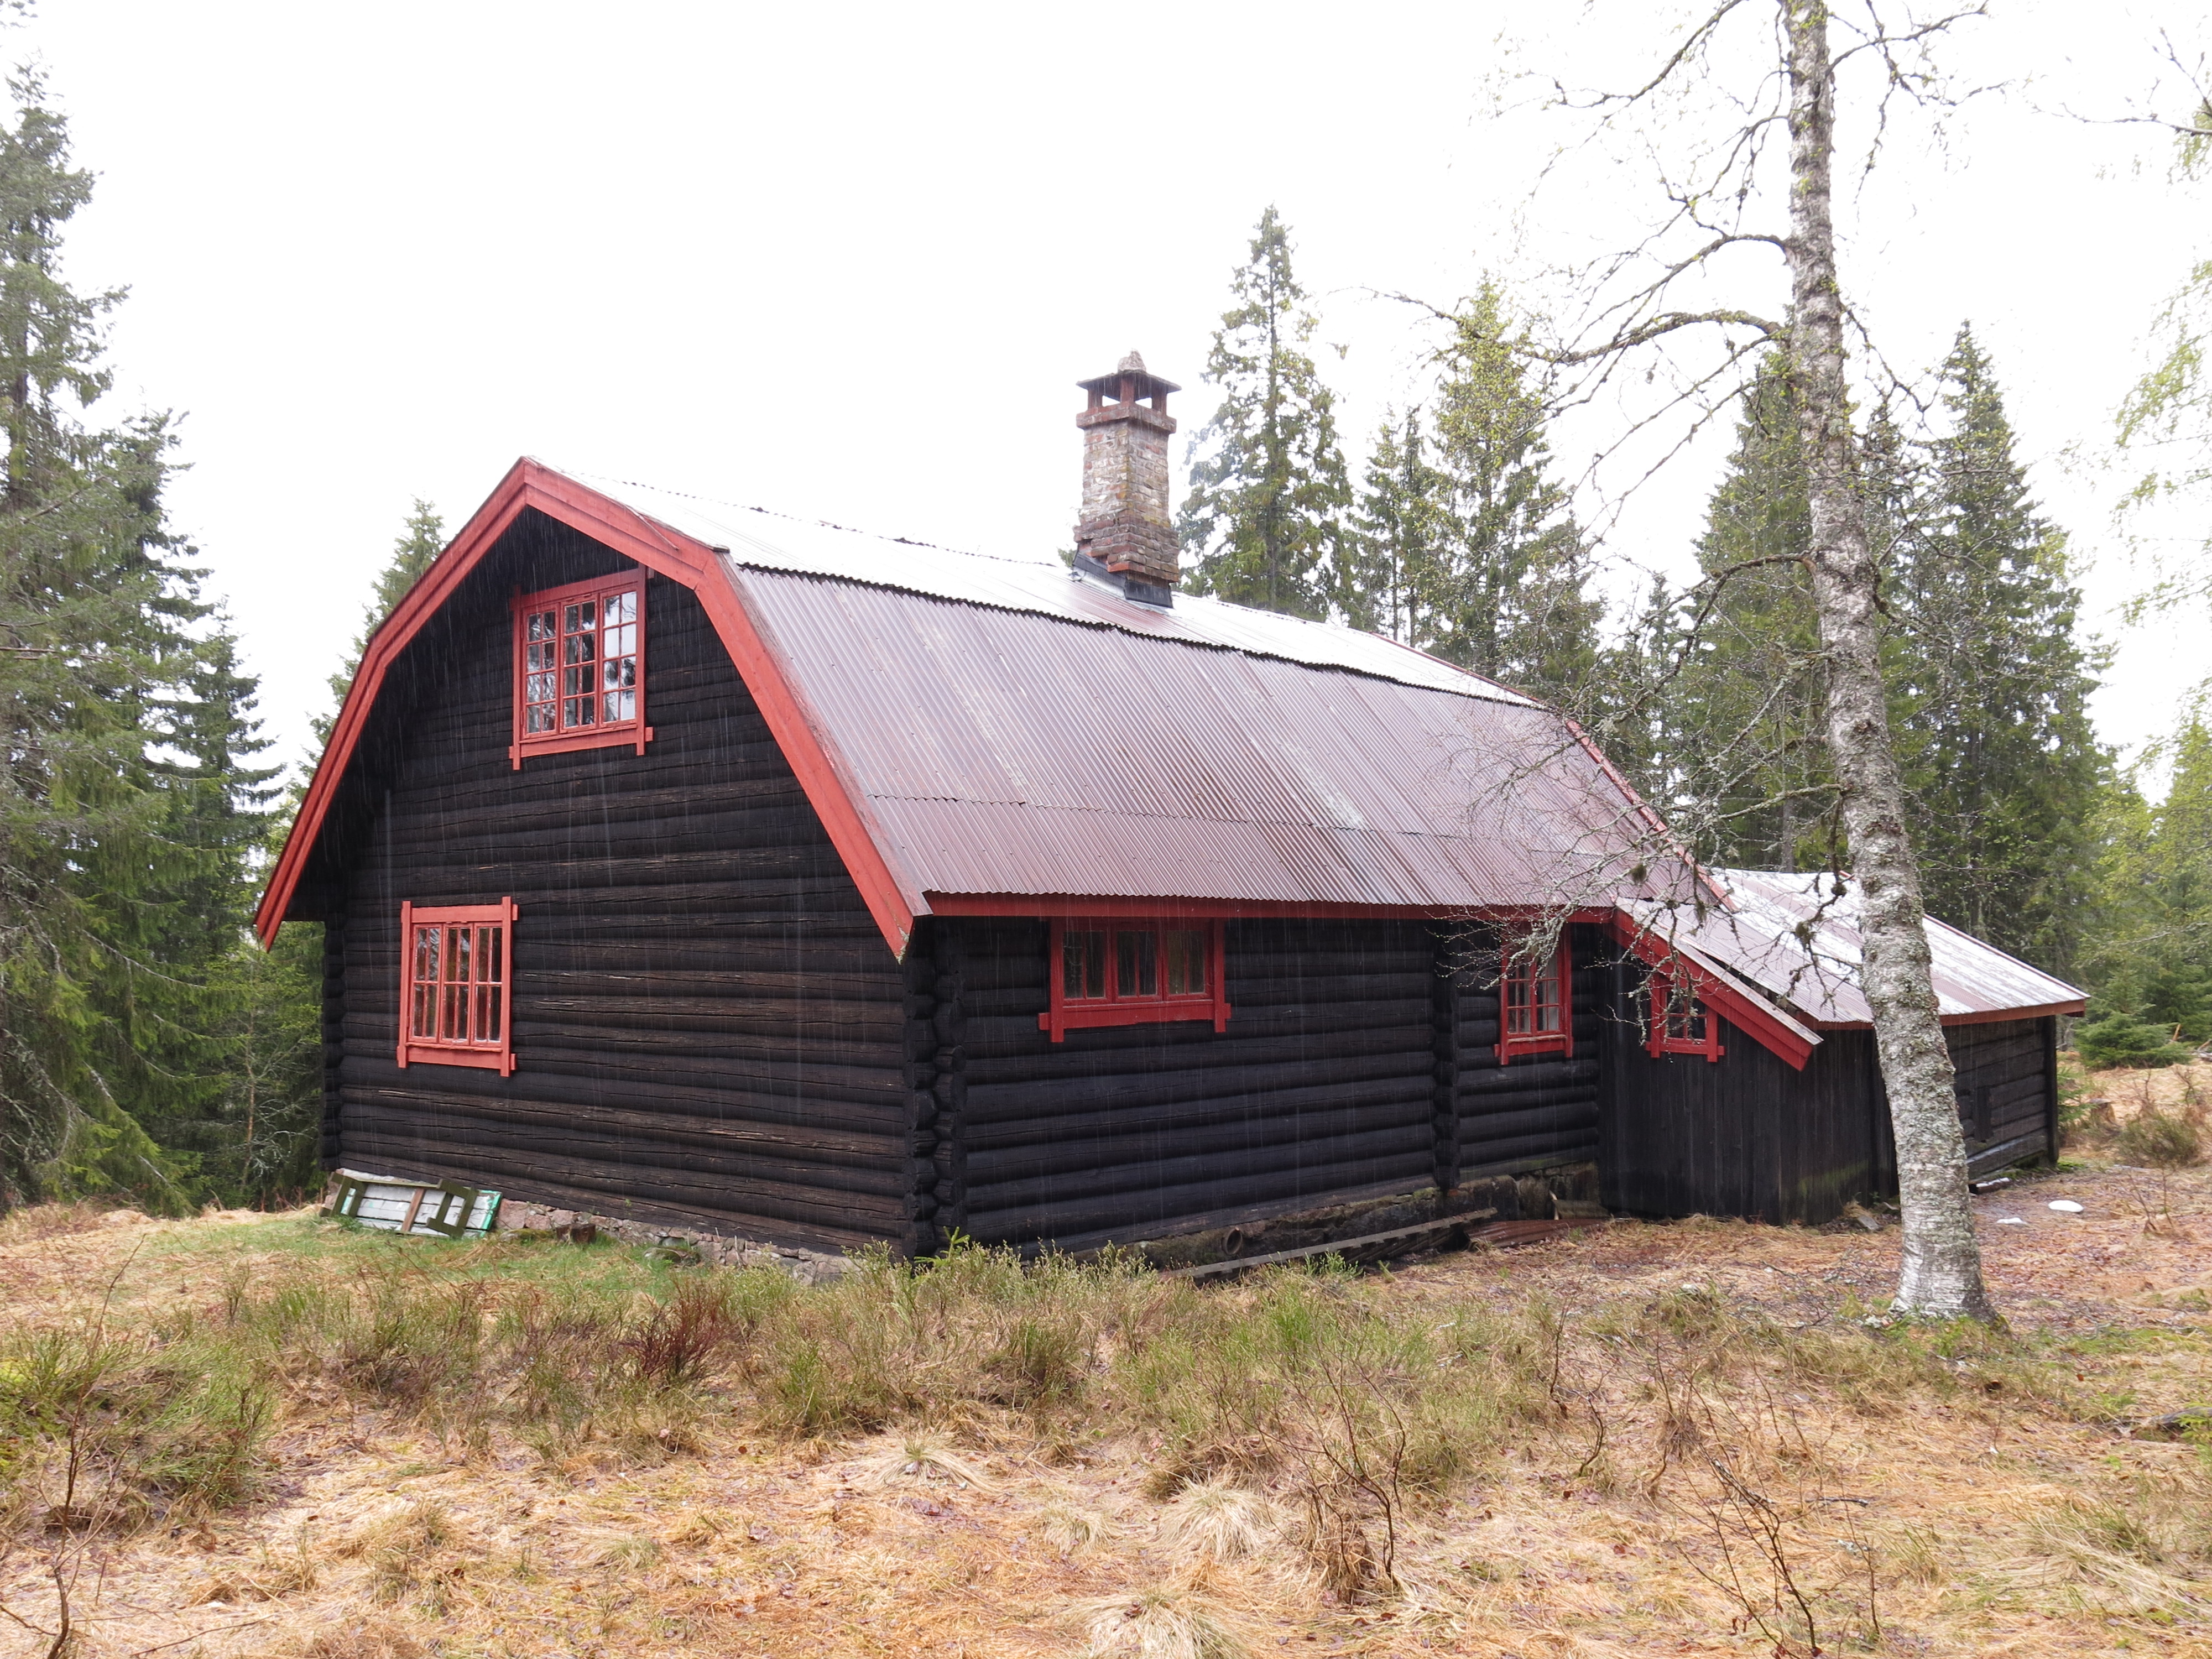 Bilde av hytta på Rudsæter. Det er en toetasjes laftet tømmerbygning med smårutede vinduer, mansardtak i blikk og åpen sval. Foto: Ingeborg Magerøy, Riksantikvaren